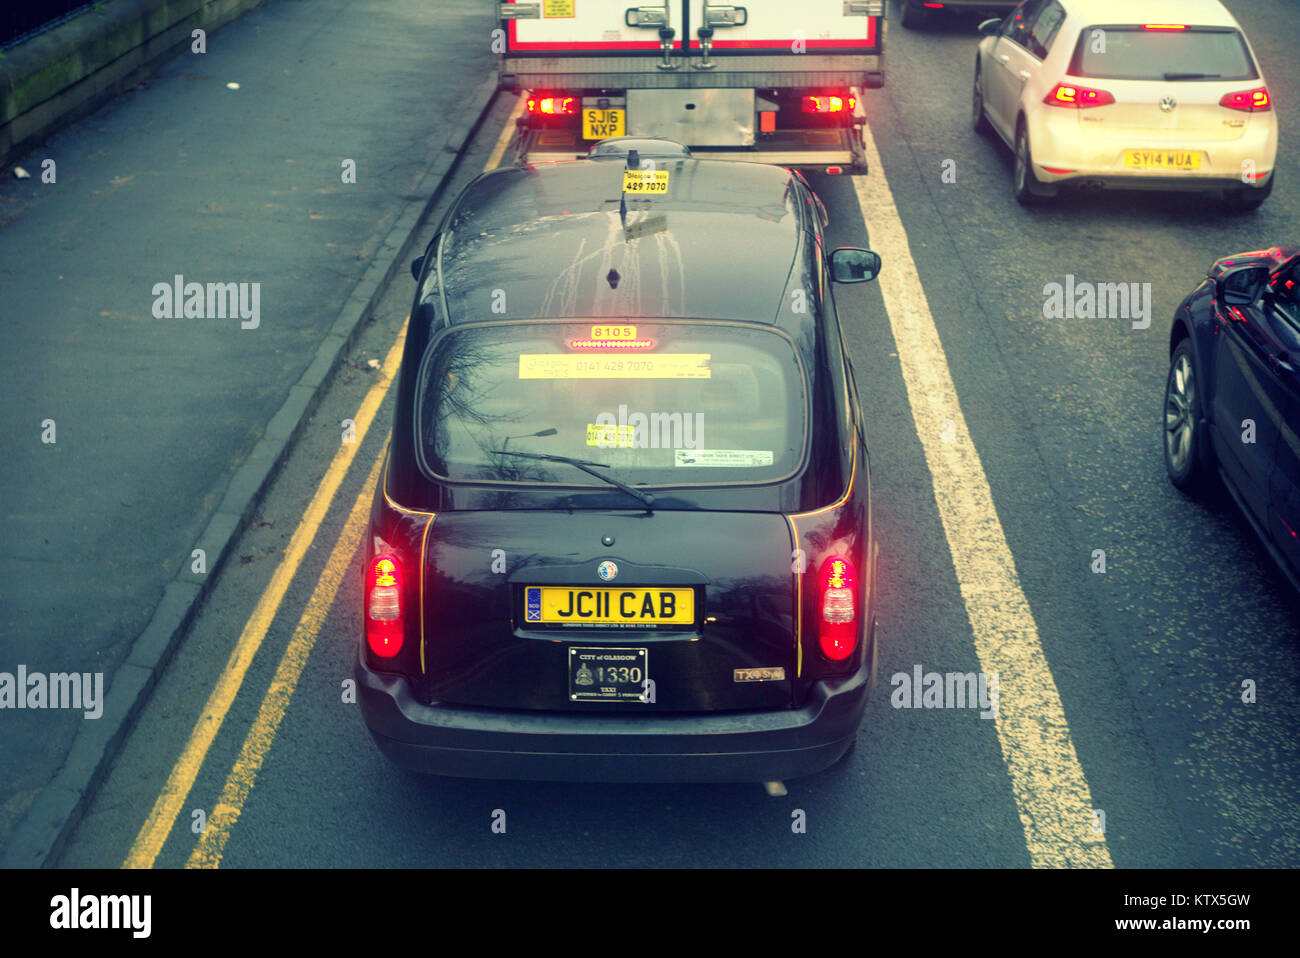 Die schwarzen Londoner Taxi auf der Straße Straße zwischen gelben Linien mit apt Nummernschild cab stecken im Stau hinter Lkw Lkw in der Perspektive rotes Licht Stockfoto